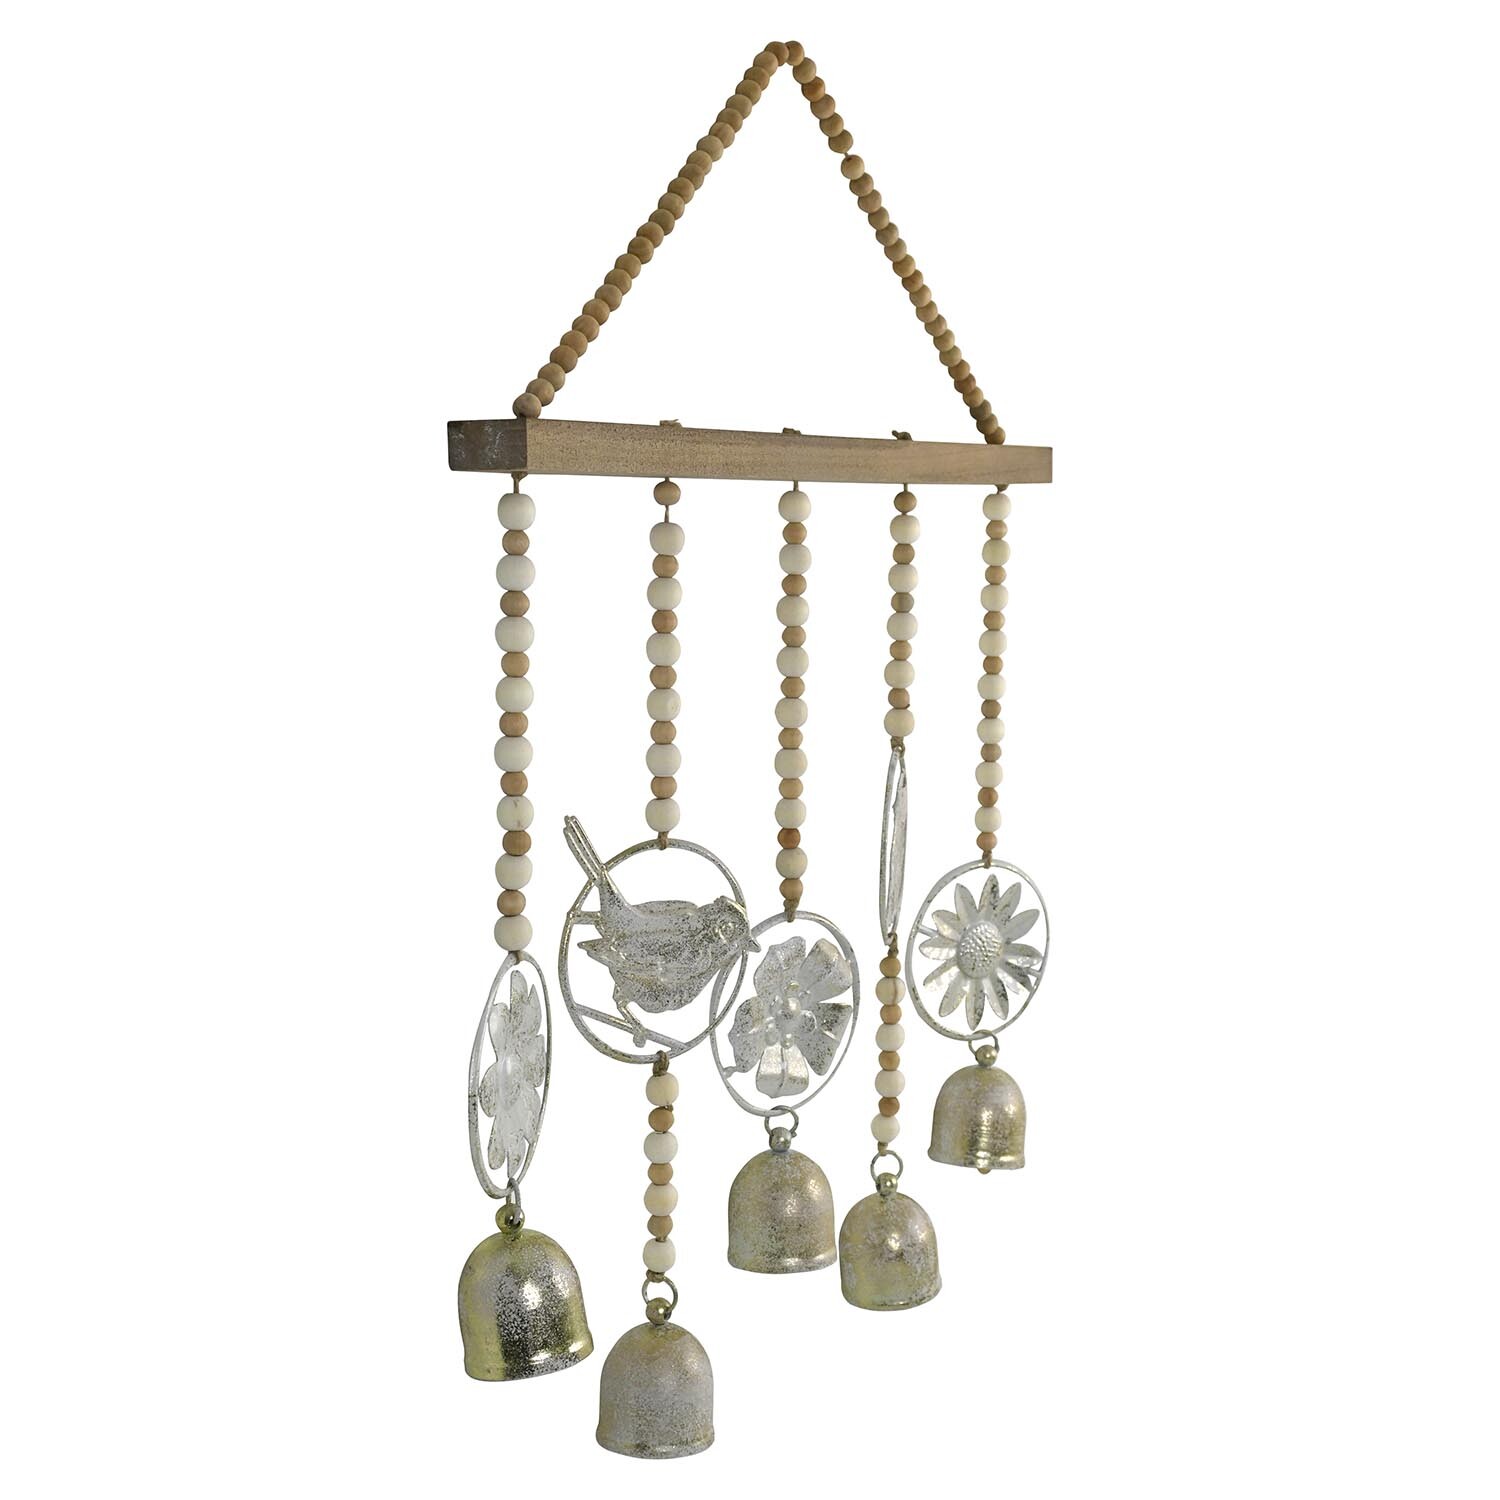 Vintage Effect Beaded Hanging Bells - Natural Image 2